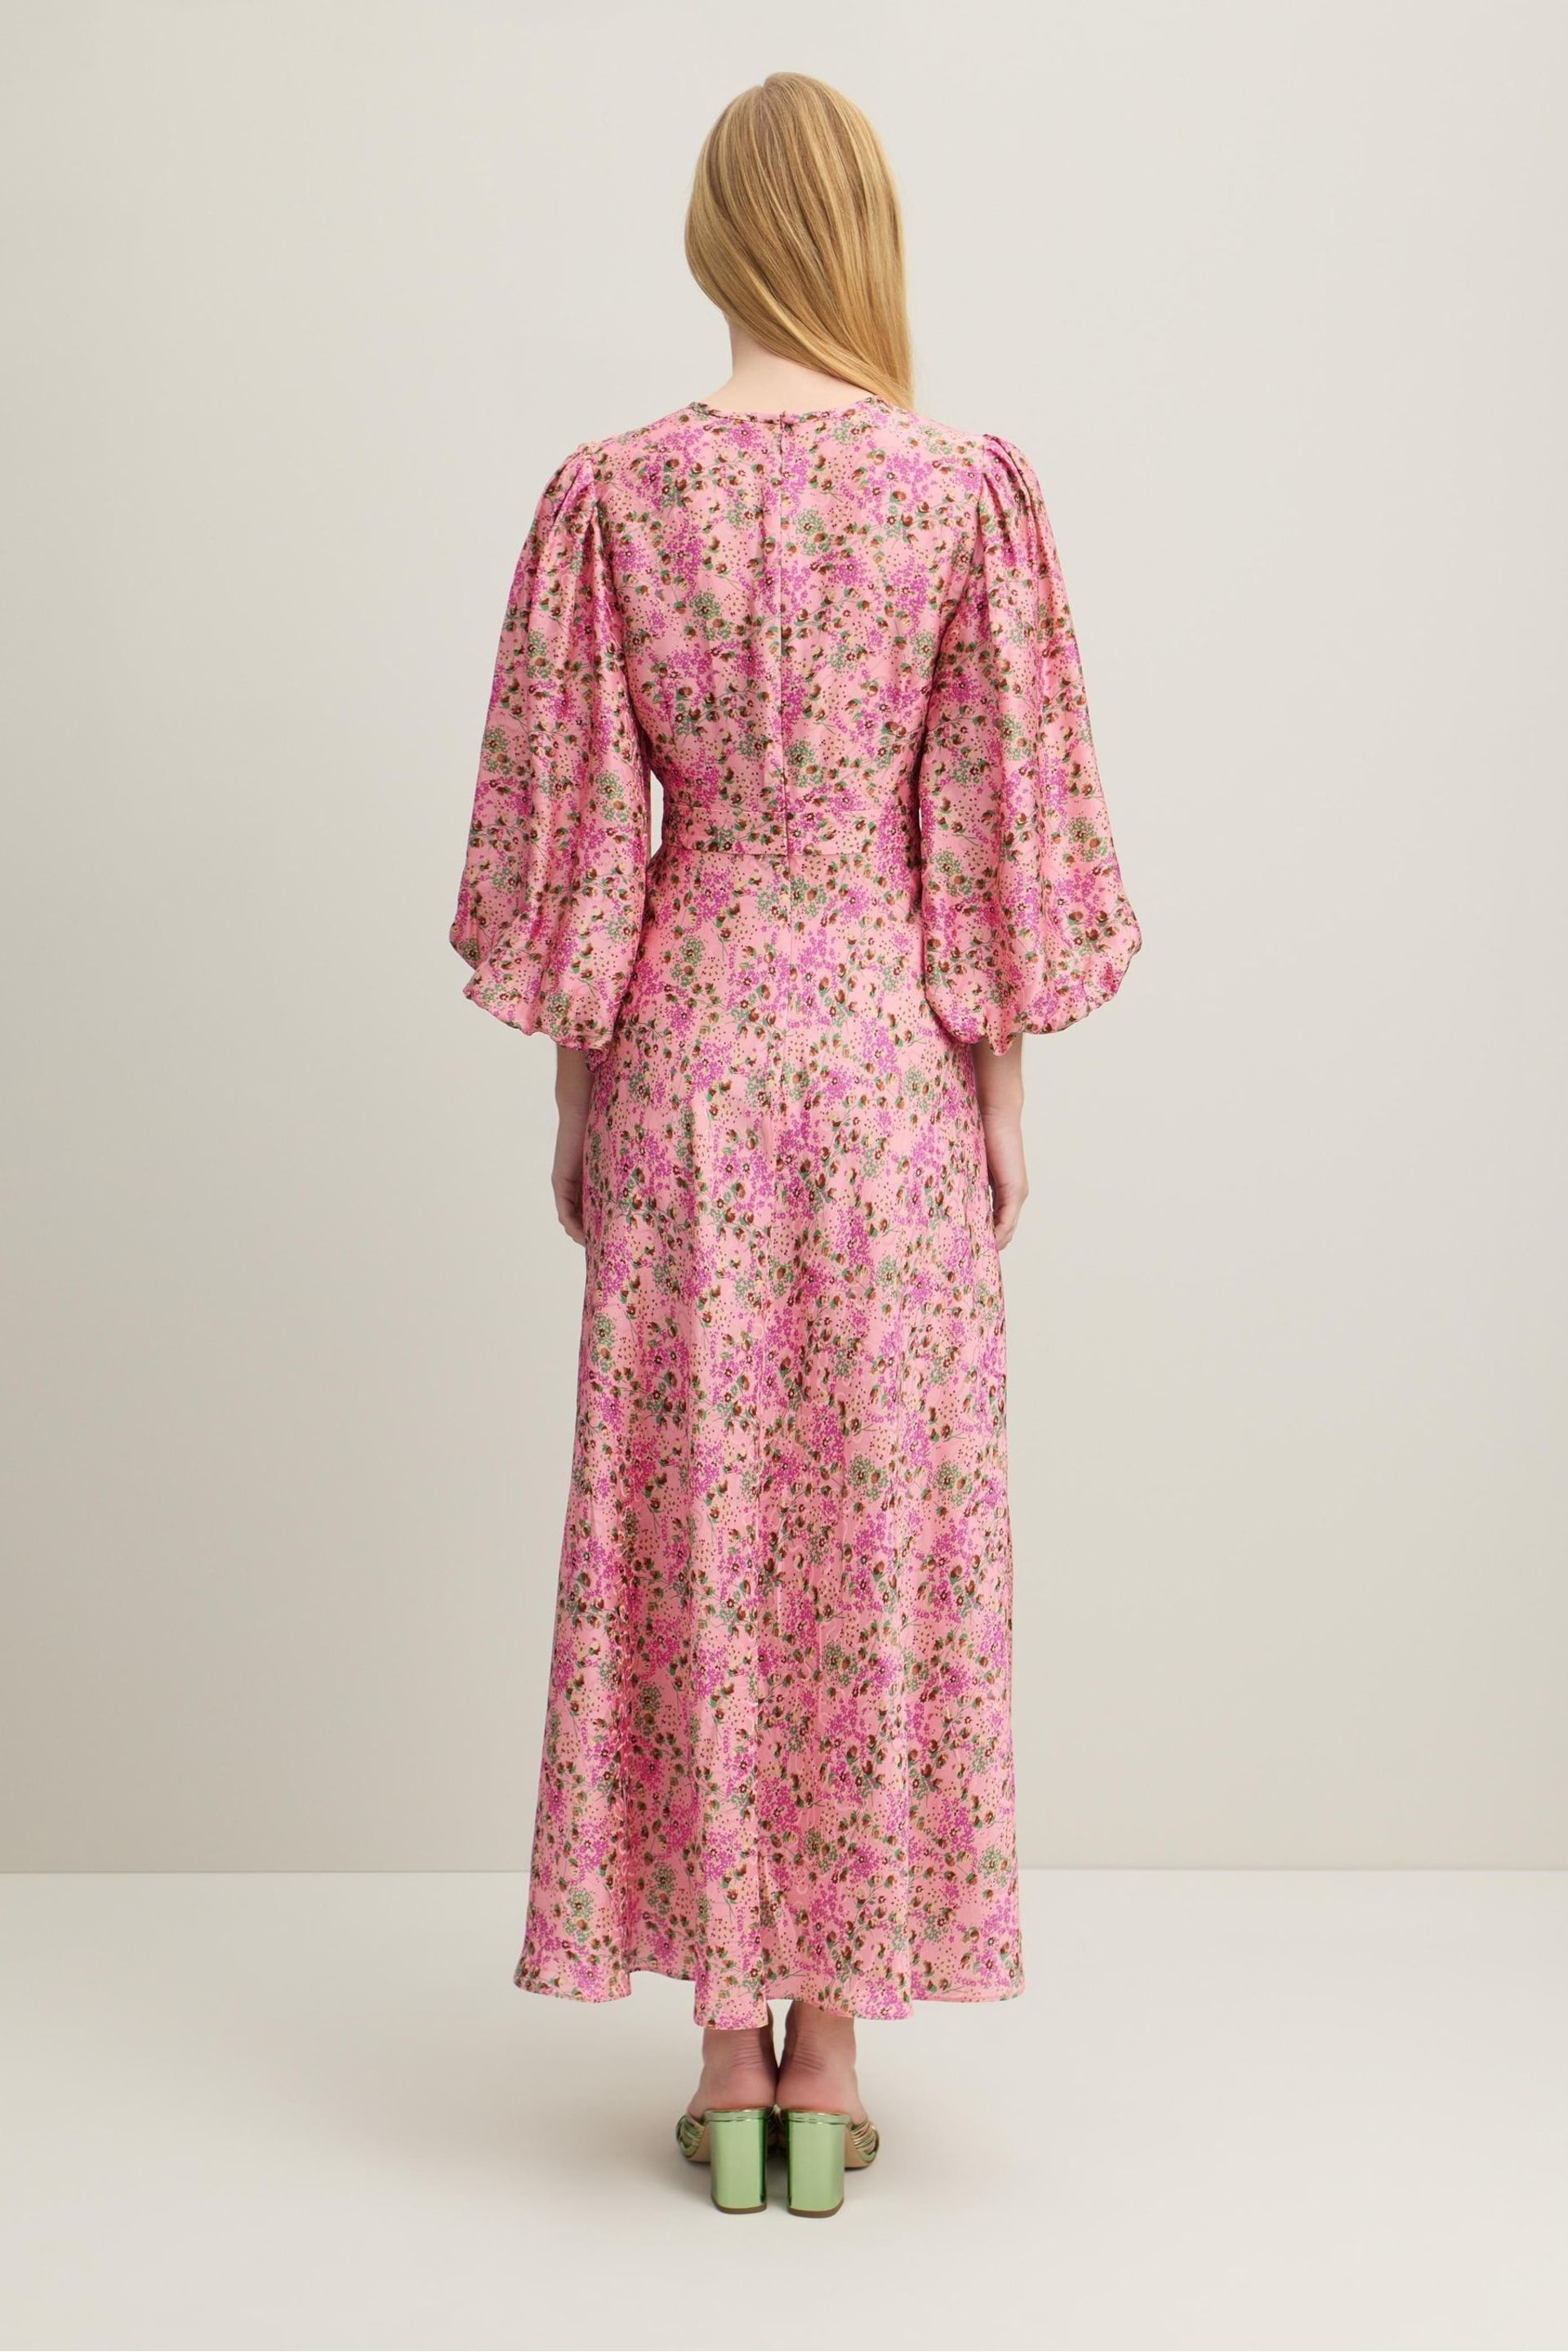 LK Bennett Lois Neon Garden Print Viscose-Silk Blend Dress - Image 3 of 3